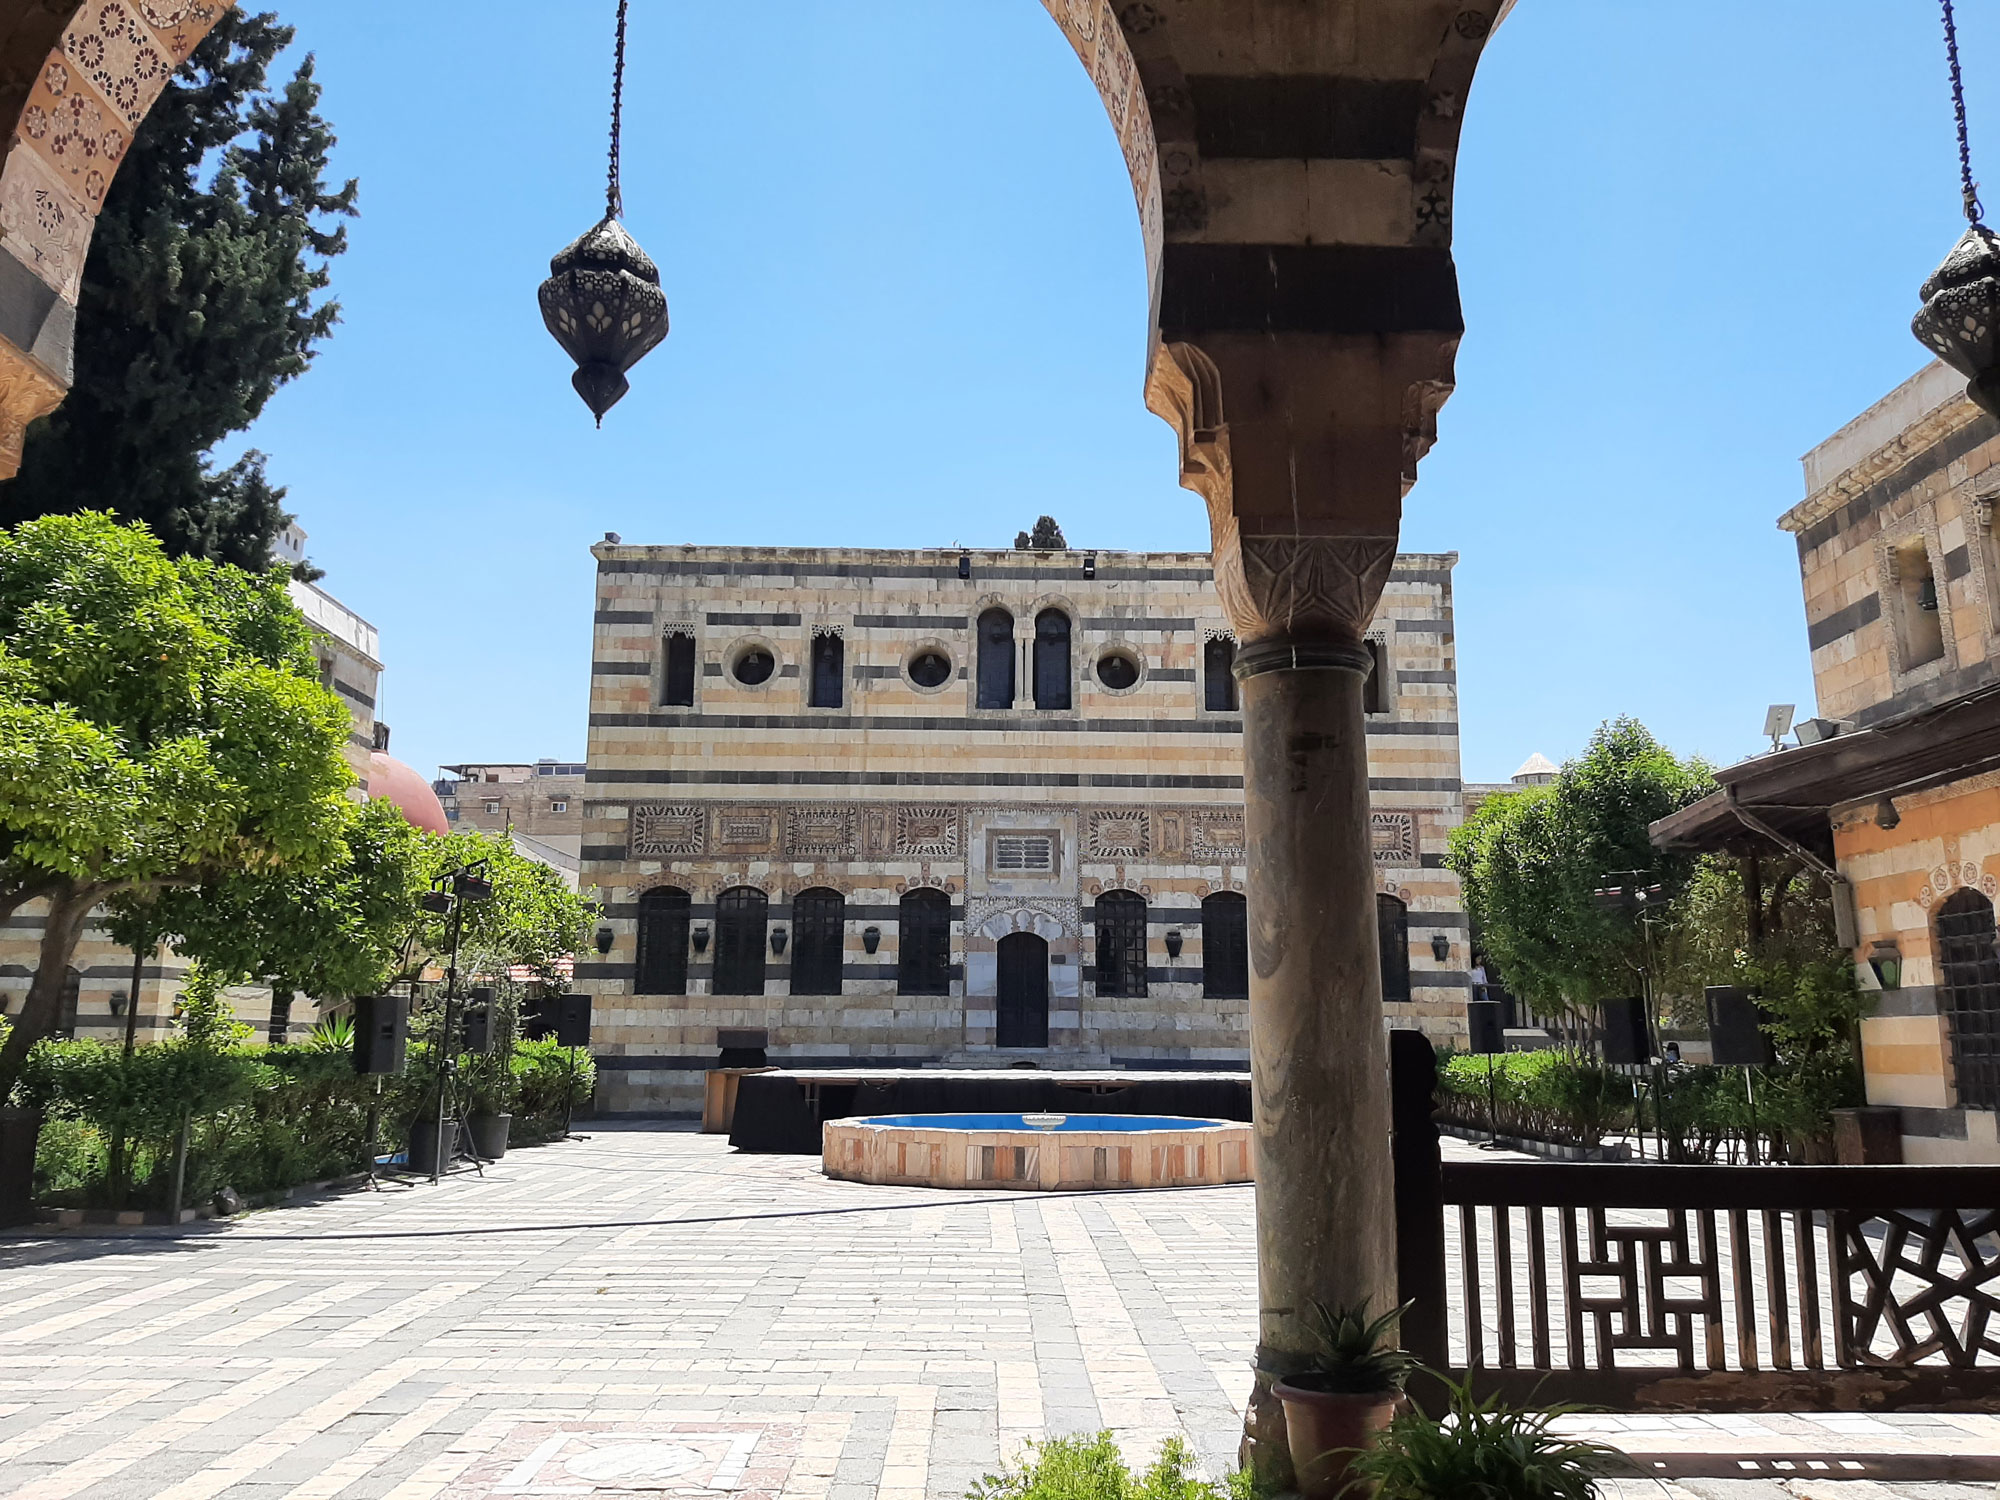 XVIII a. statyti Azmo rūmai, Damasko senamiestis. Aurelijos Auškalnytės nuotraukos iš Sirijos